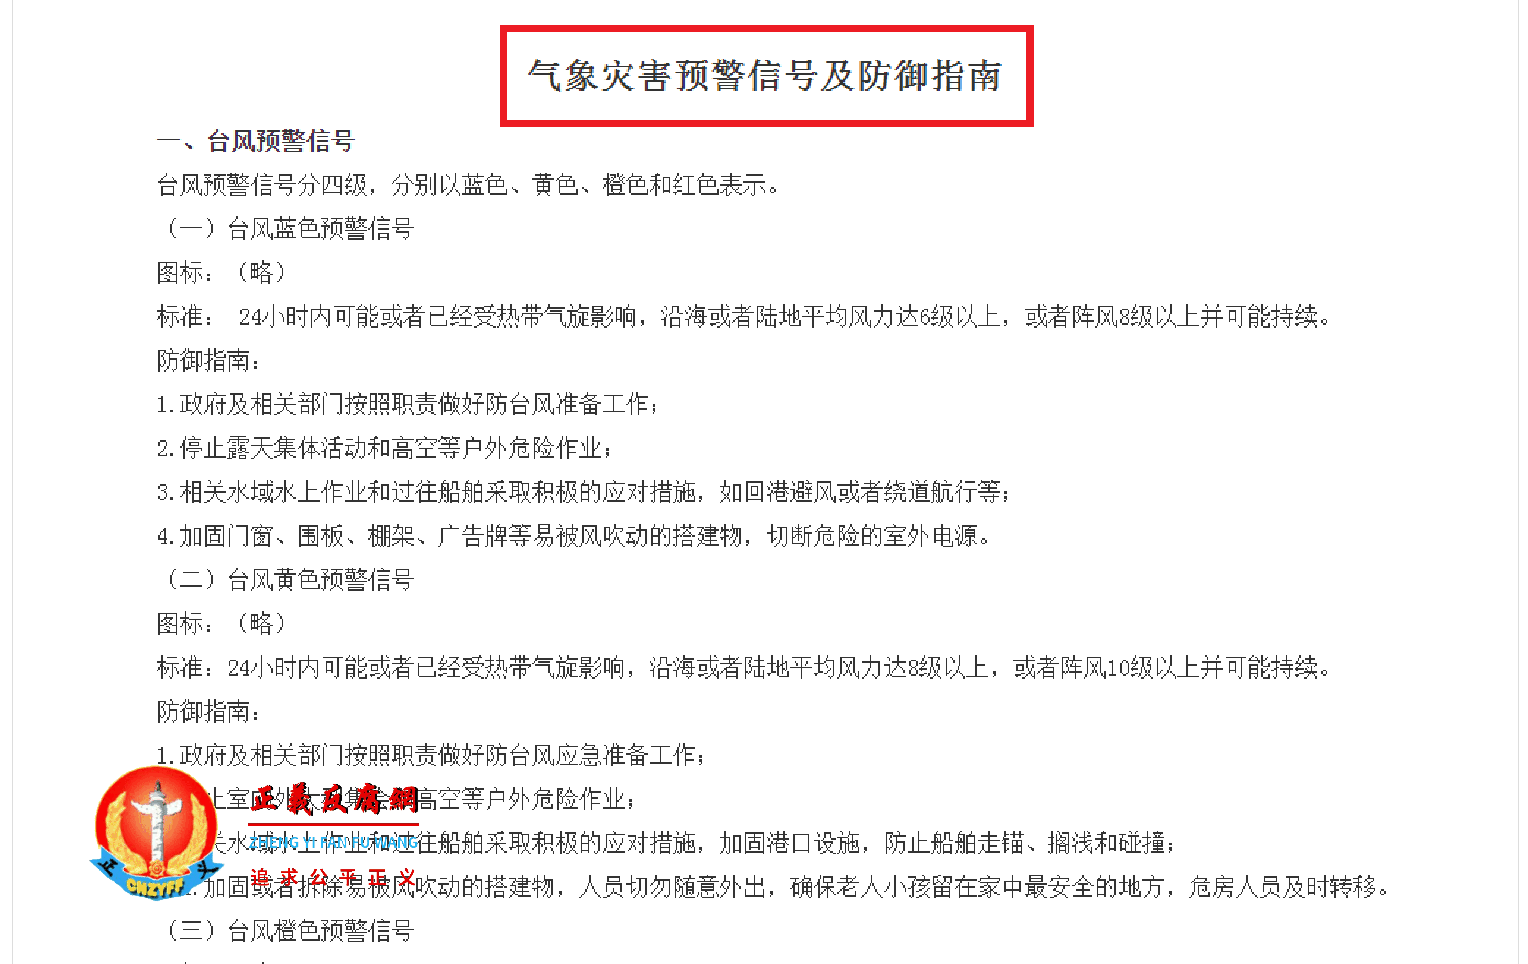 中国气象局令第16号 附《气象灾害预警信号及防御指南》规定了暴雨红色预警的防御措施。.png